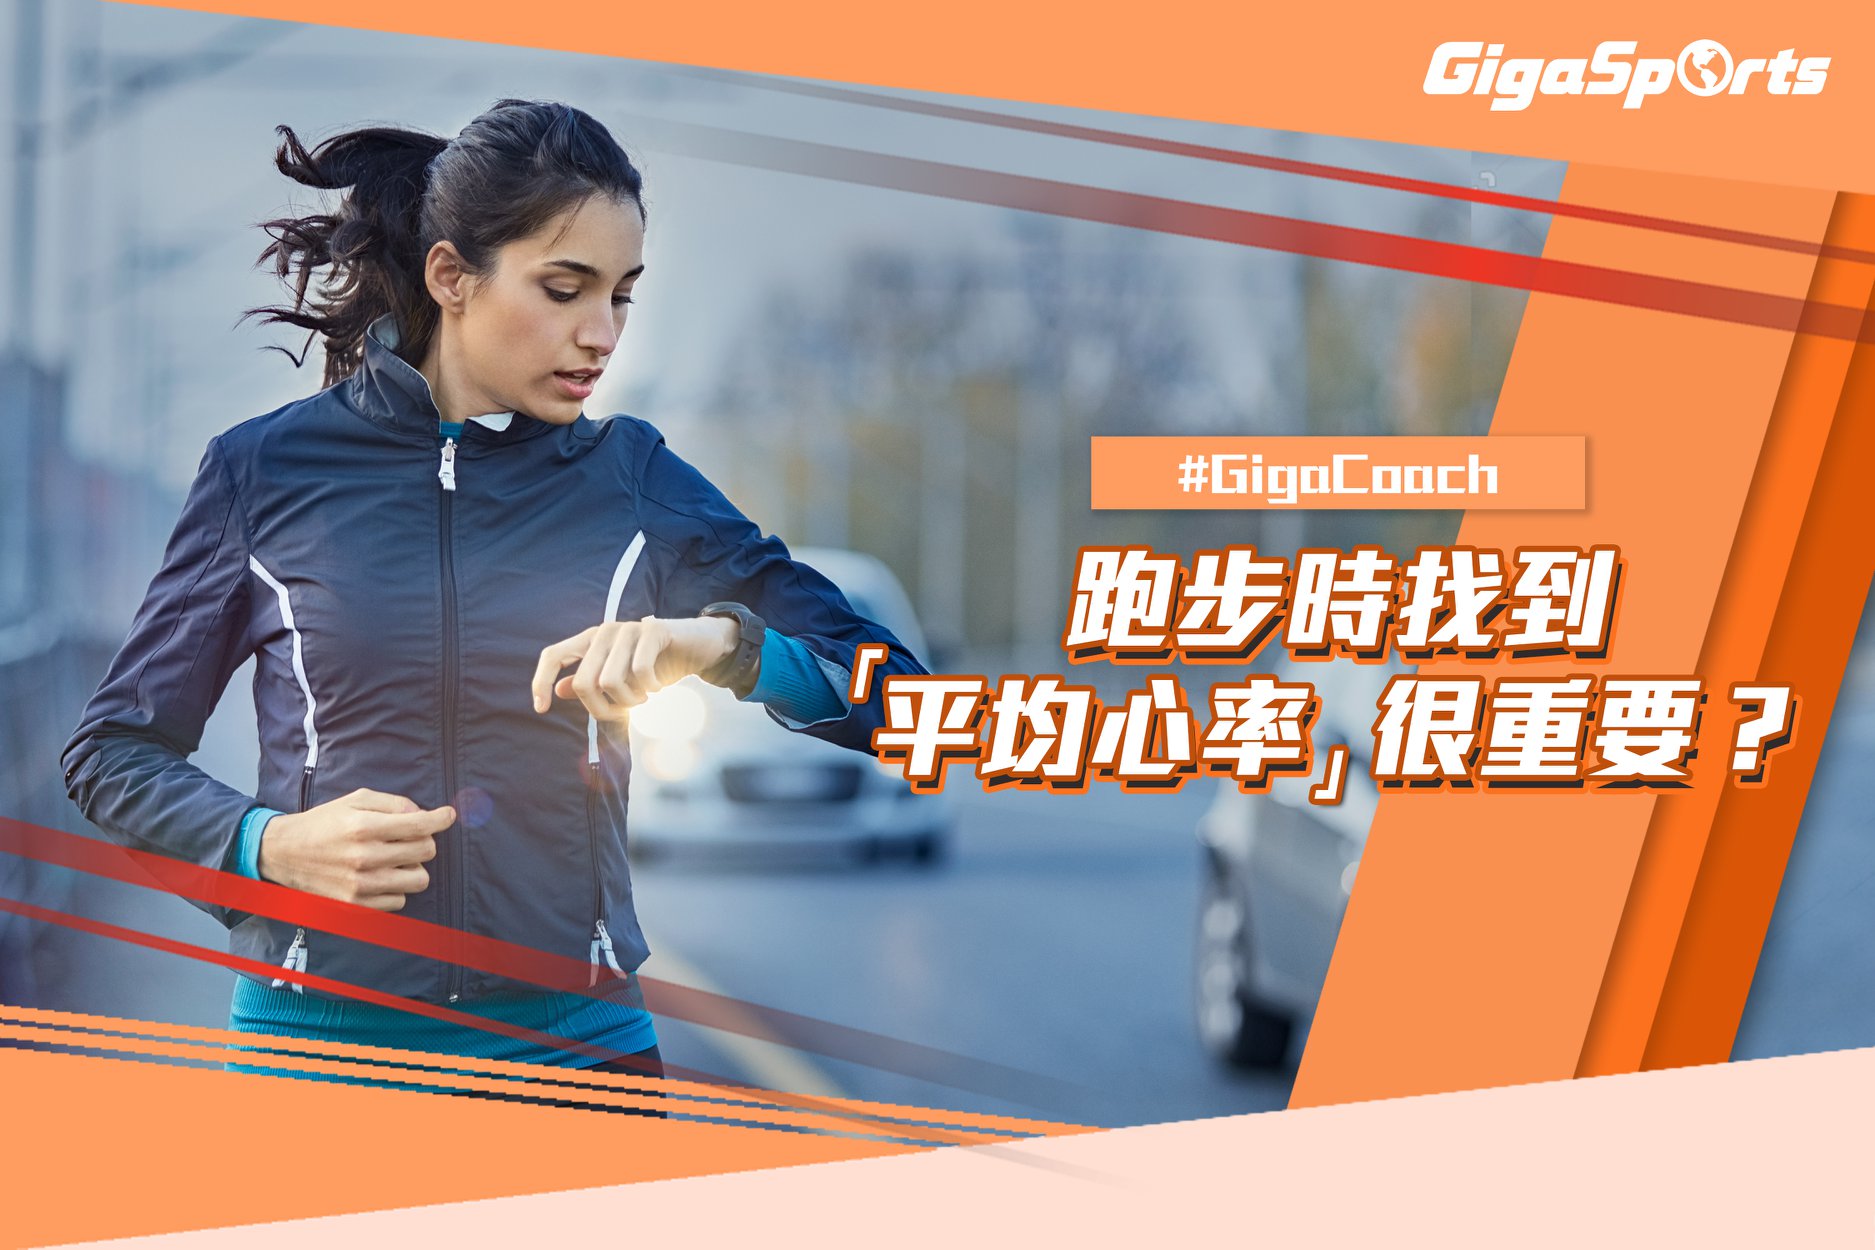 【#GigaCoach】跑步時找到平均心率很重要？ 各位跑手於跑步時，除咗留意配速、距離同時間外，心率都係一個重要嘅數據指標，間接影響運動成效。了解自己嘅平均心率能夠令你更易掌握狀態訓練進度，達致更佳表現！ #GigaCoach 提提你...